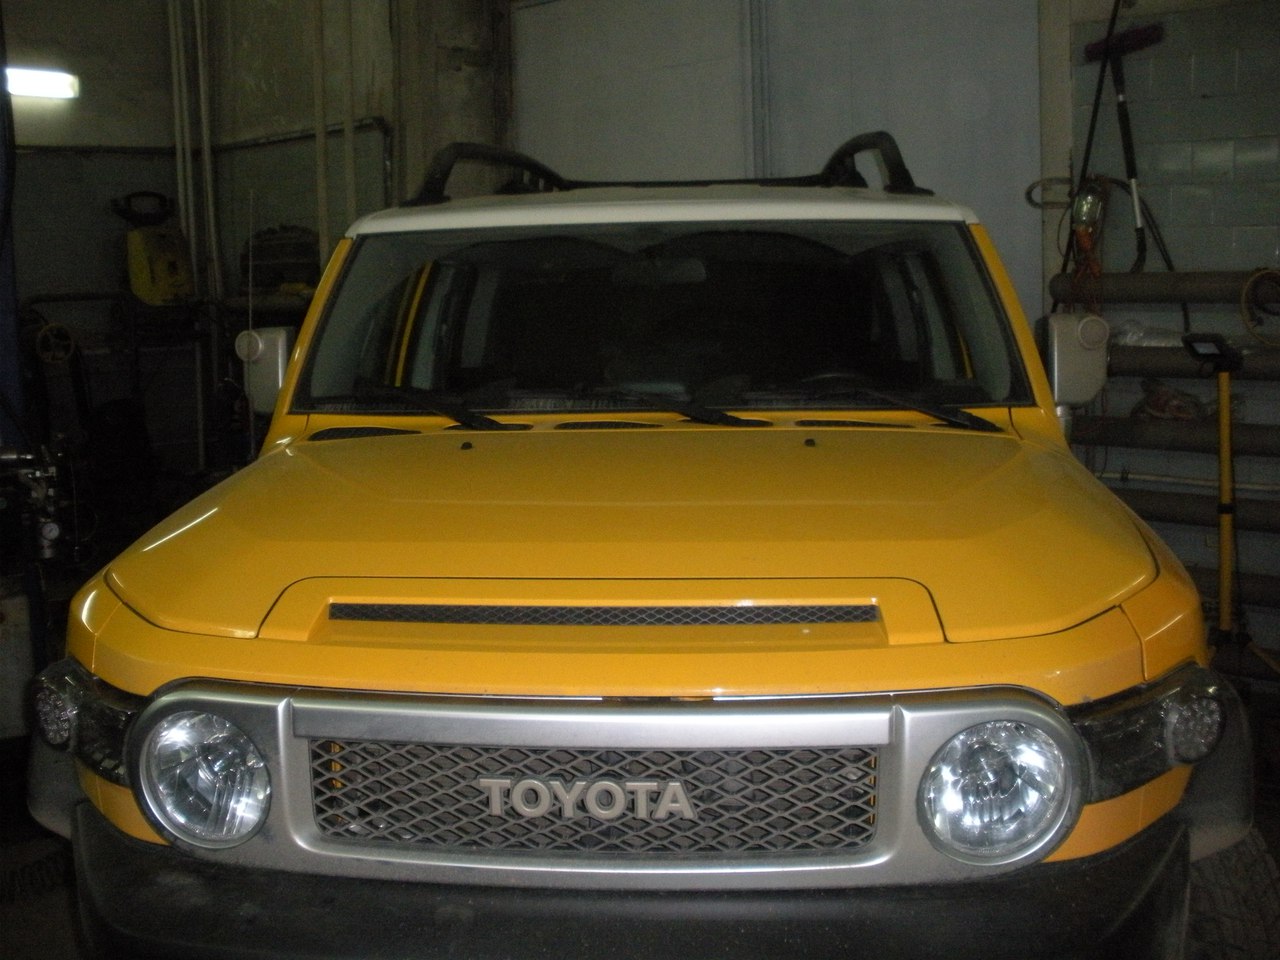 Toyota Corolla 1.6 124 Hp